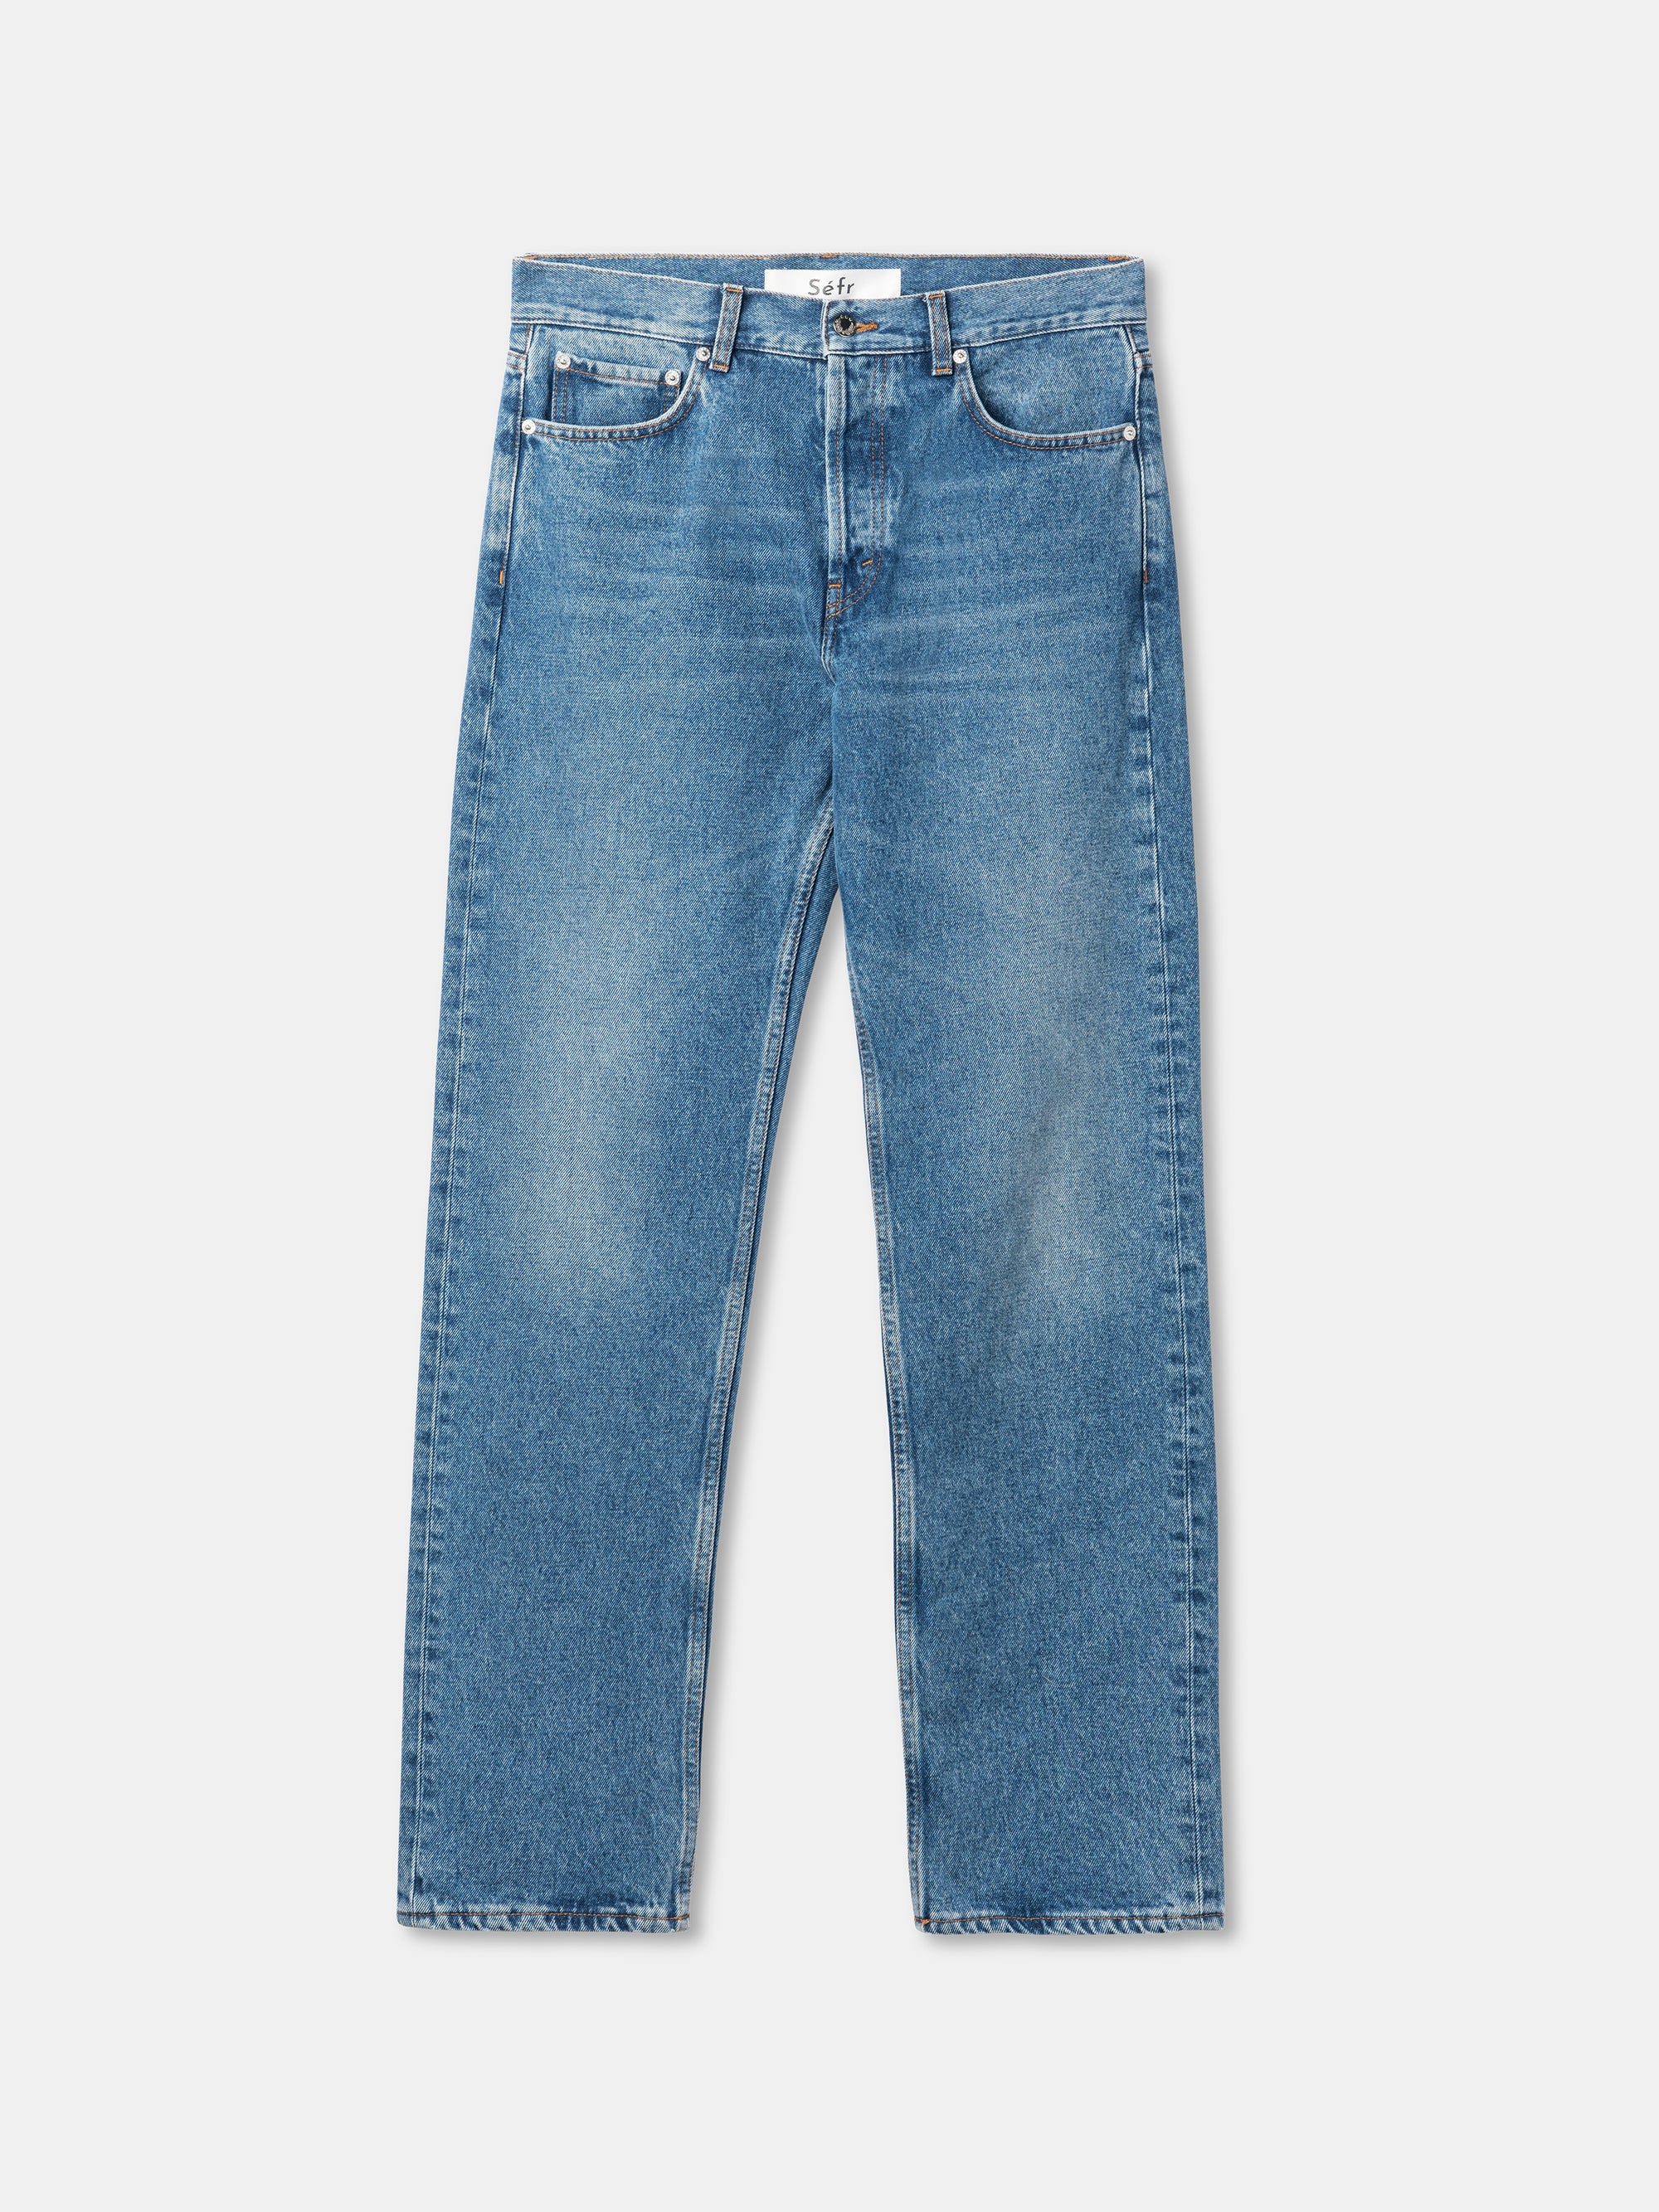 SEFR Straight Cut Jeans | Worn Wash LEO BOUTIQUE